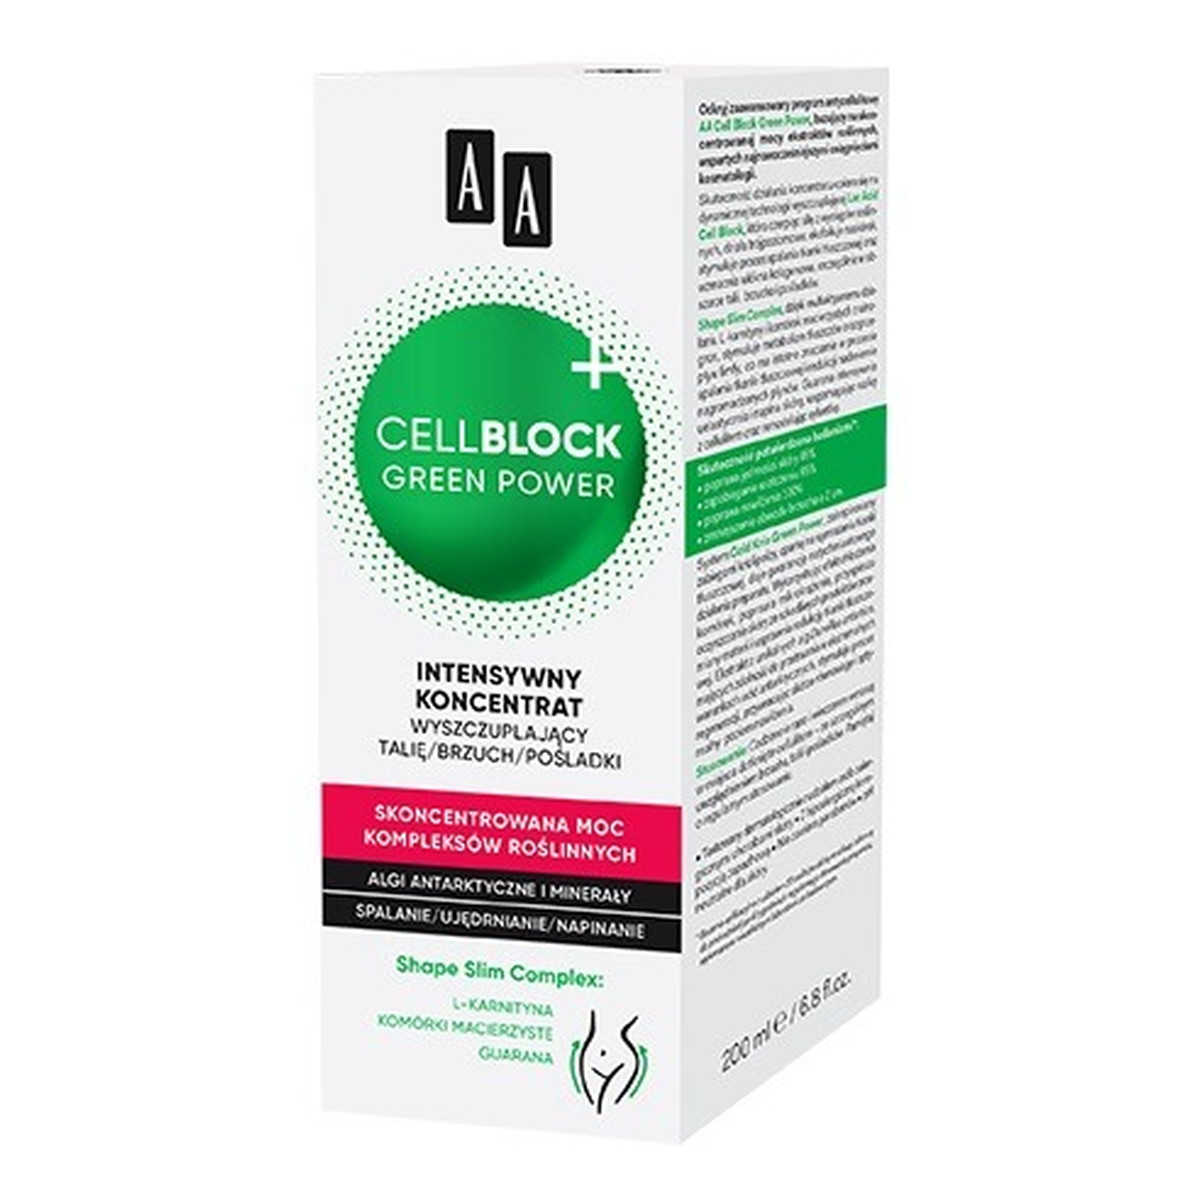 AA Cell Block Green Power Intensywny koncentrat wyszczuplający talię ,brzuch i pośladki 200ml